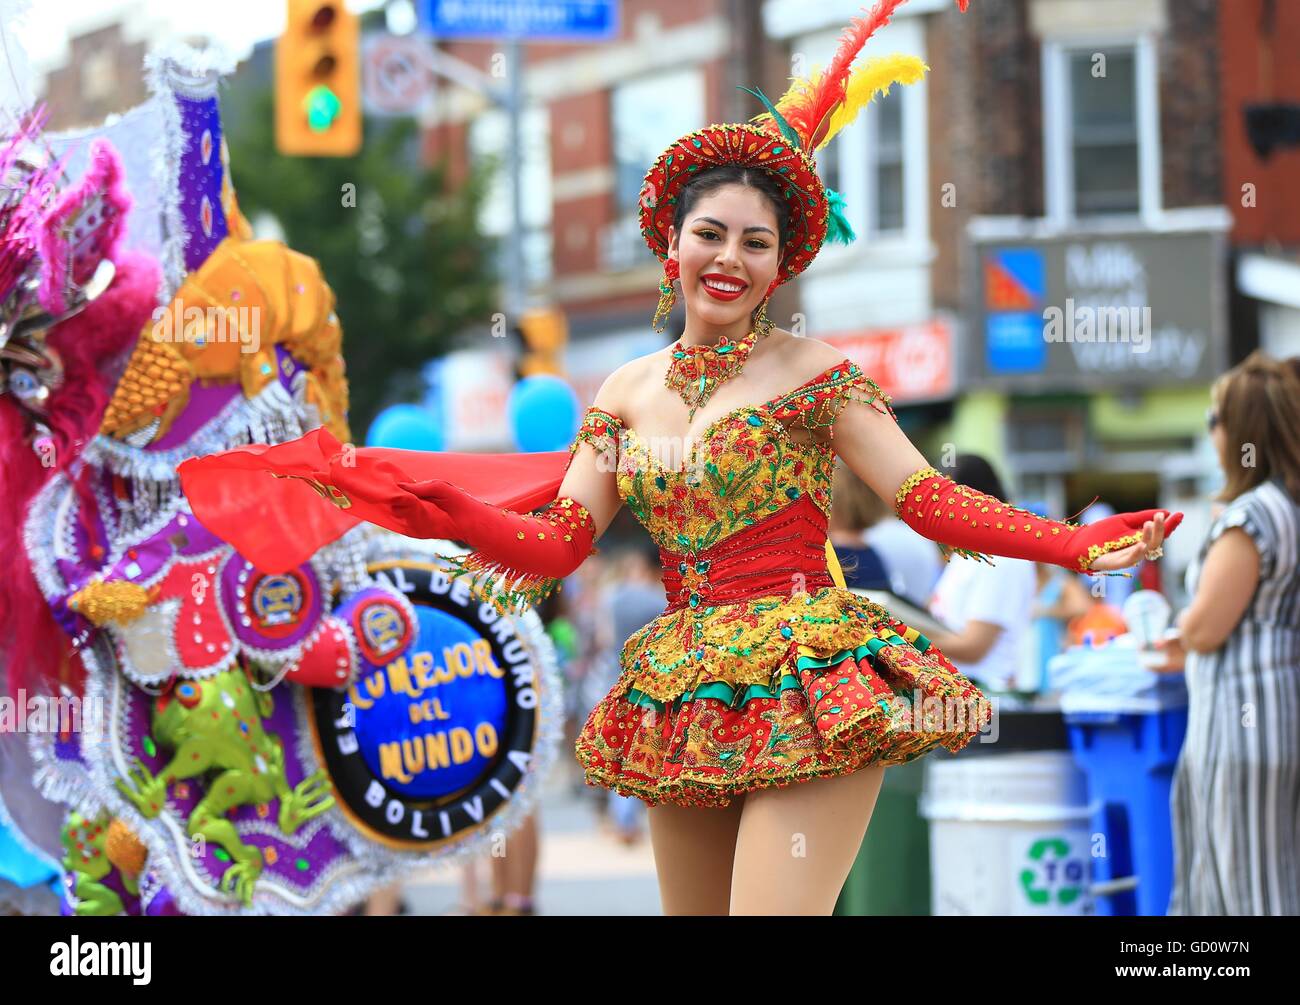 Toronto, Canadá. El 10 de julio, 2016. Un bailarín realiza durante la 12ª  Salsa en St. Clair Street Festival en Toronto, Canadá, 10 de julio de 2016.  Como una de las más